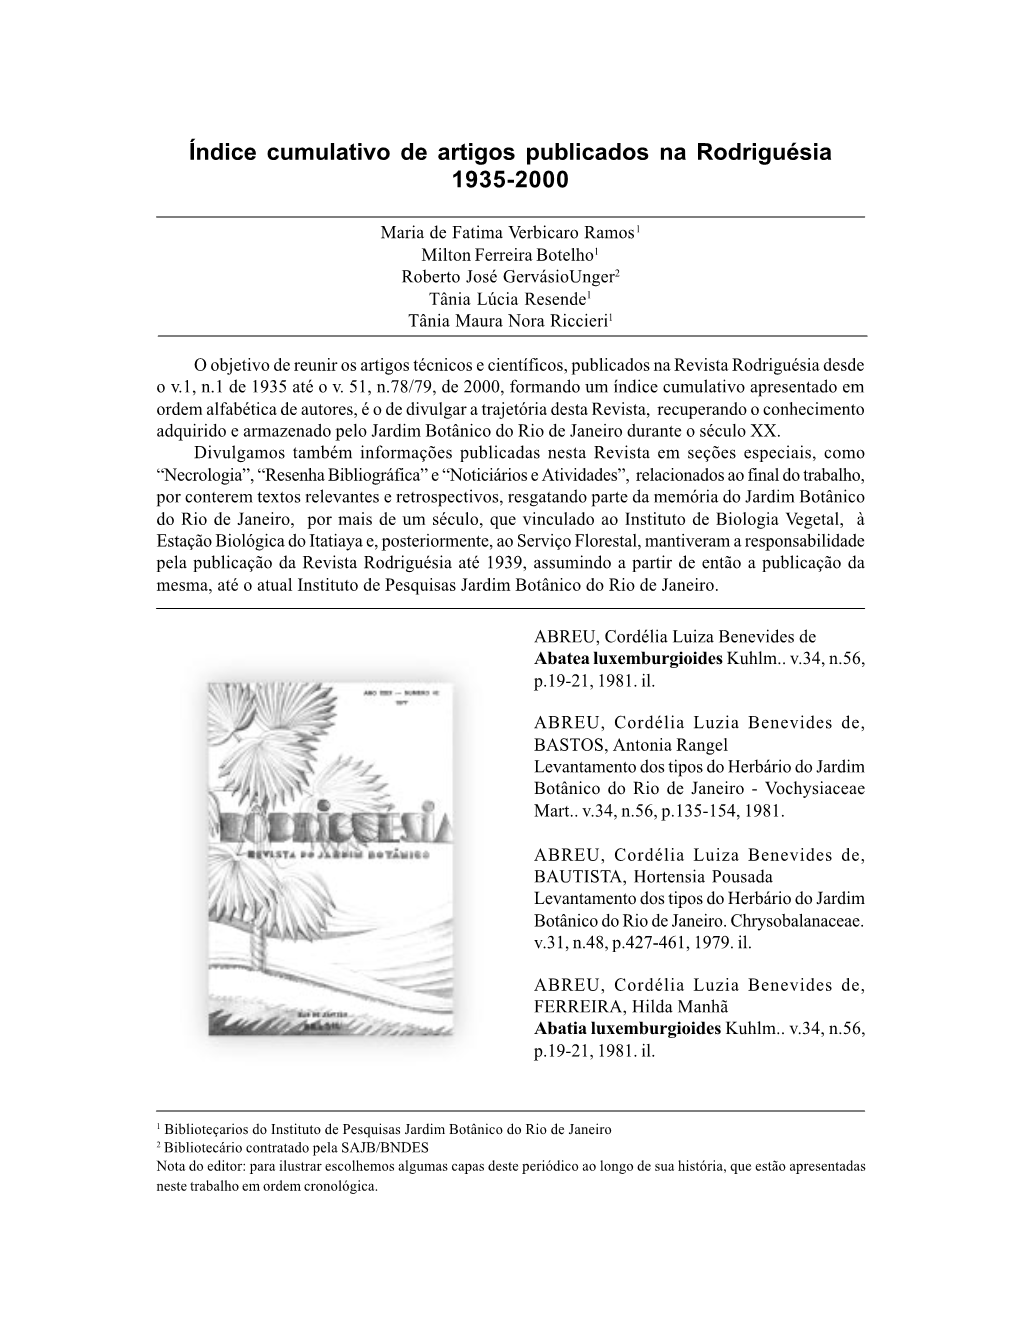 Índice Cumulativo De Artigos Publicados Na Rodriguésia 1935-2000